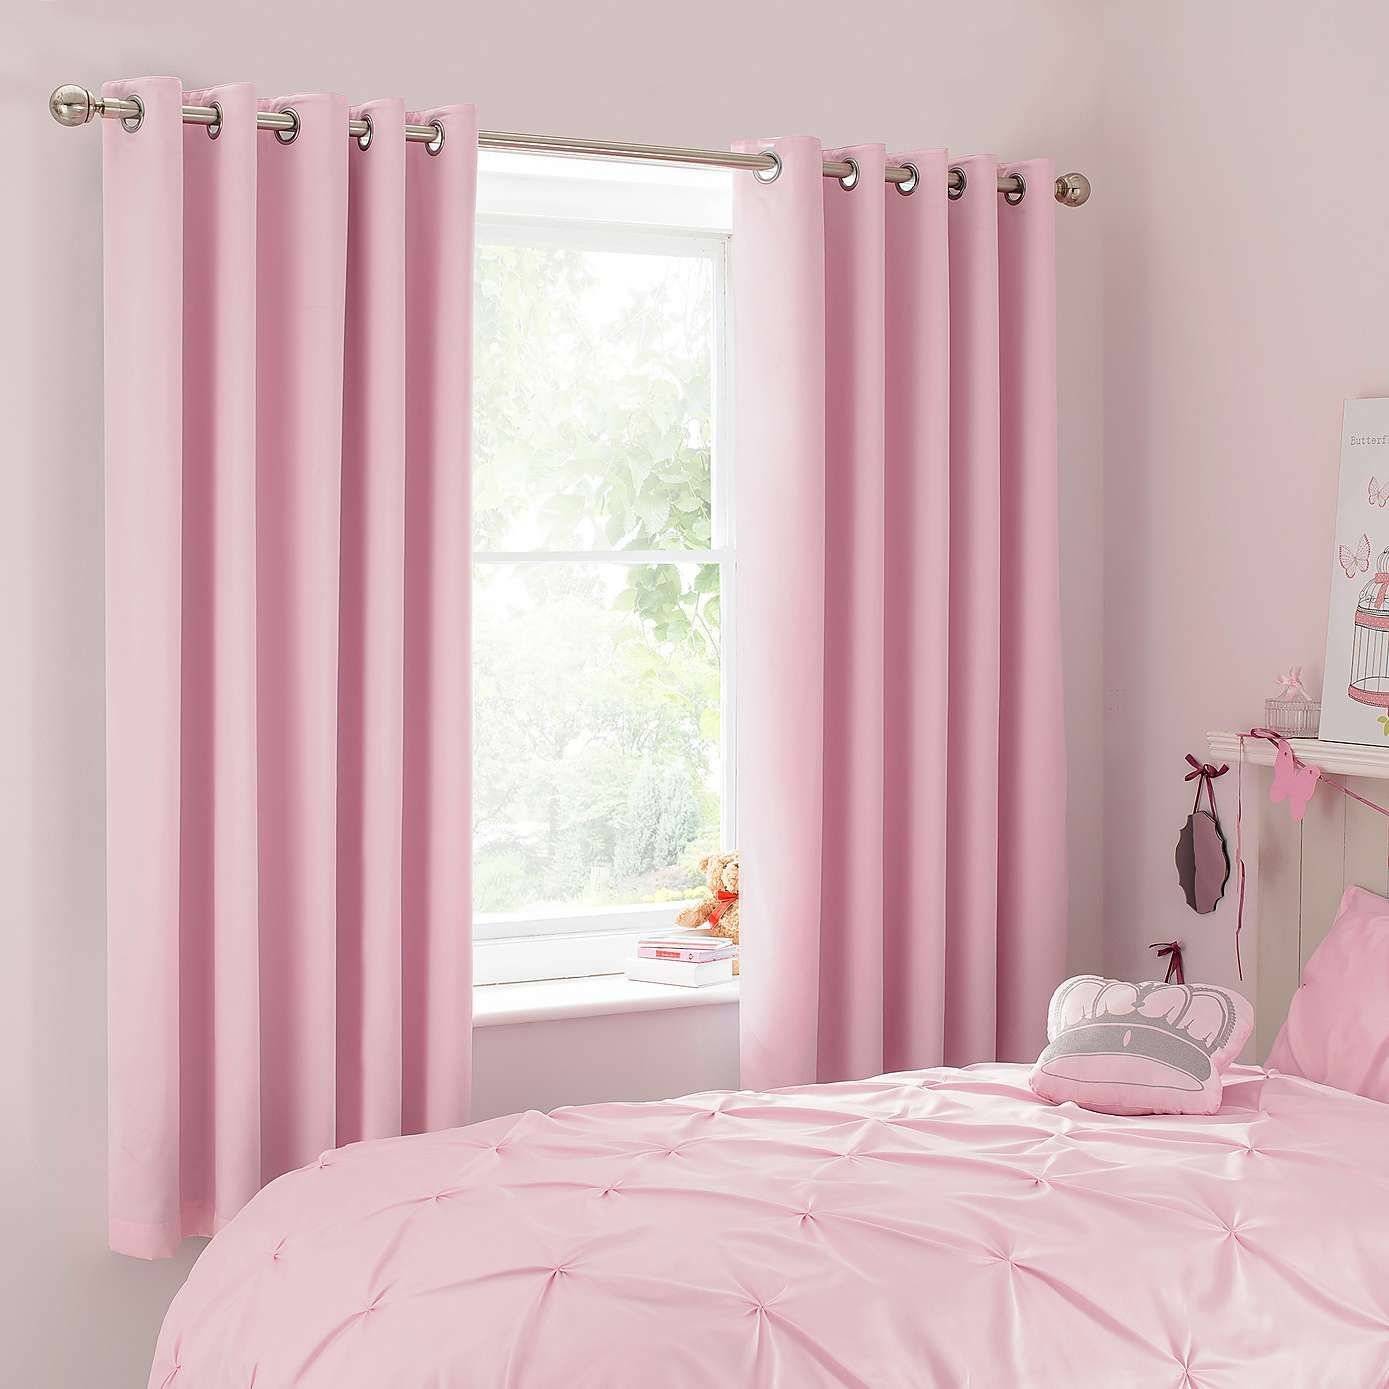 Как правильно использовать в интерьере помещений шторы розового цвета? - шторы